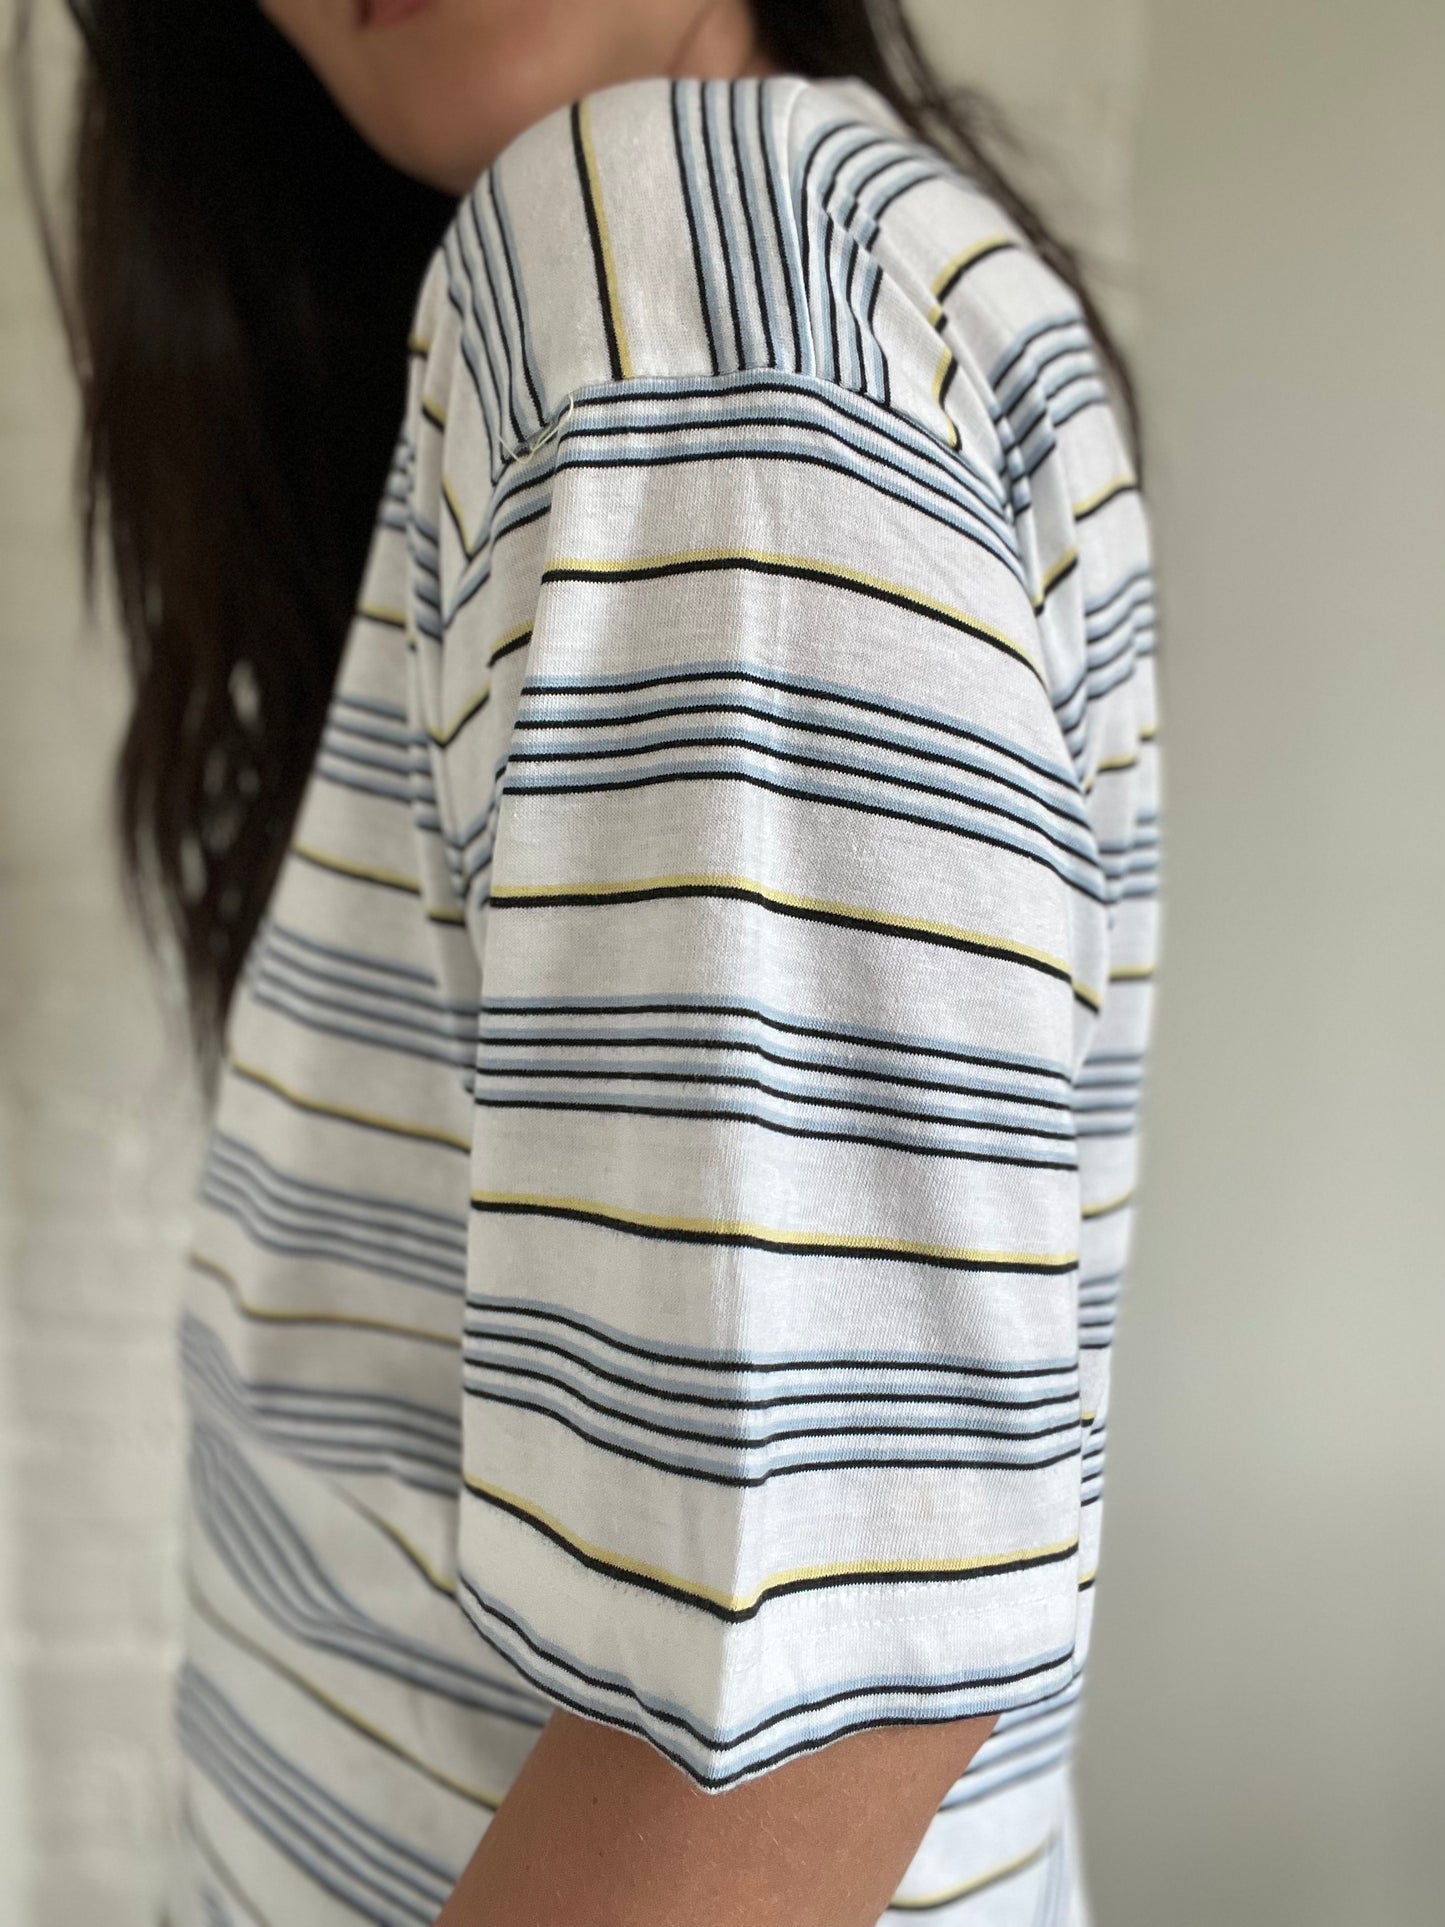 Striped Cotton T-shirt - Size M